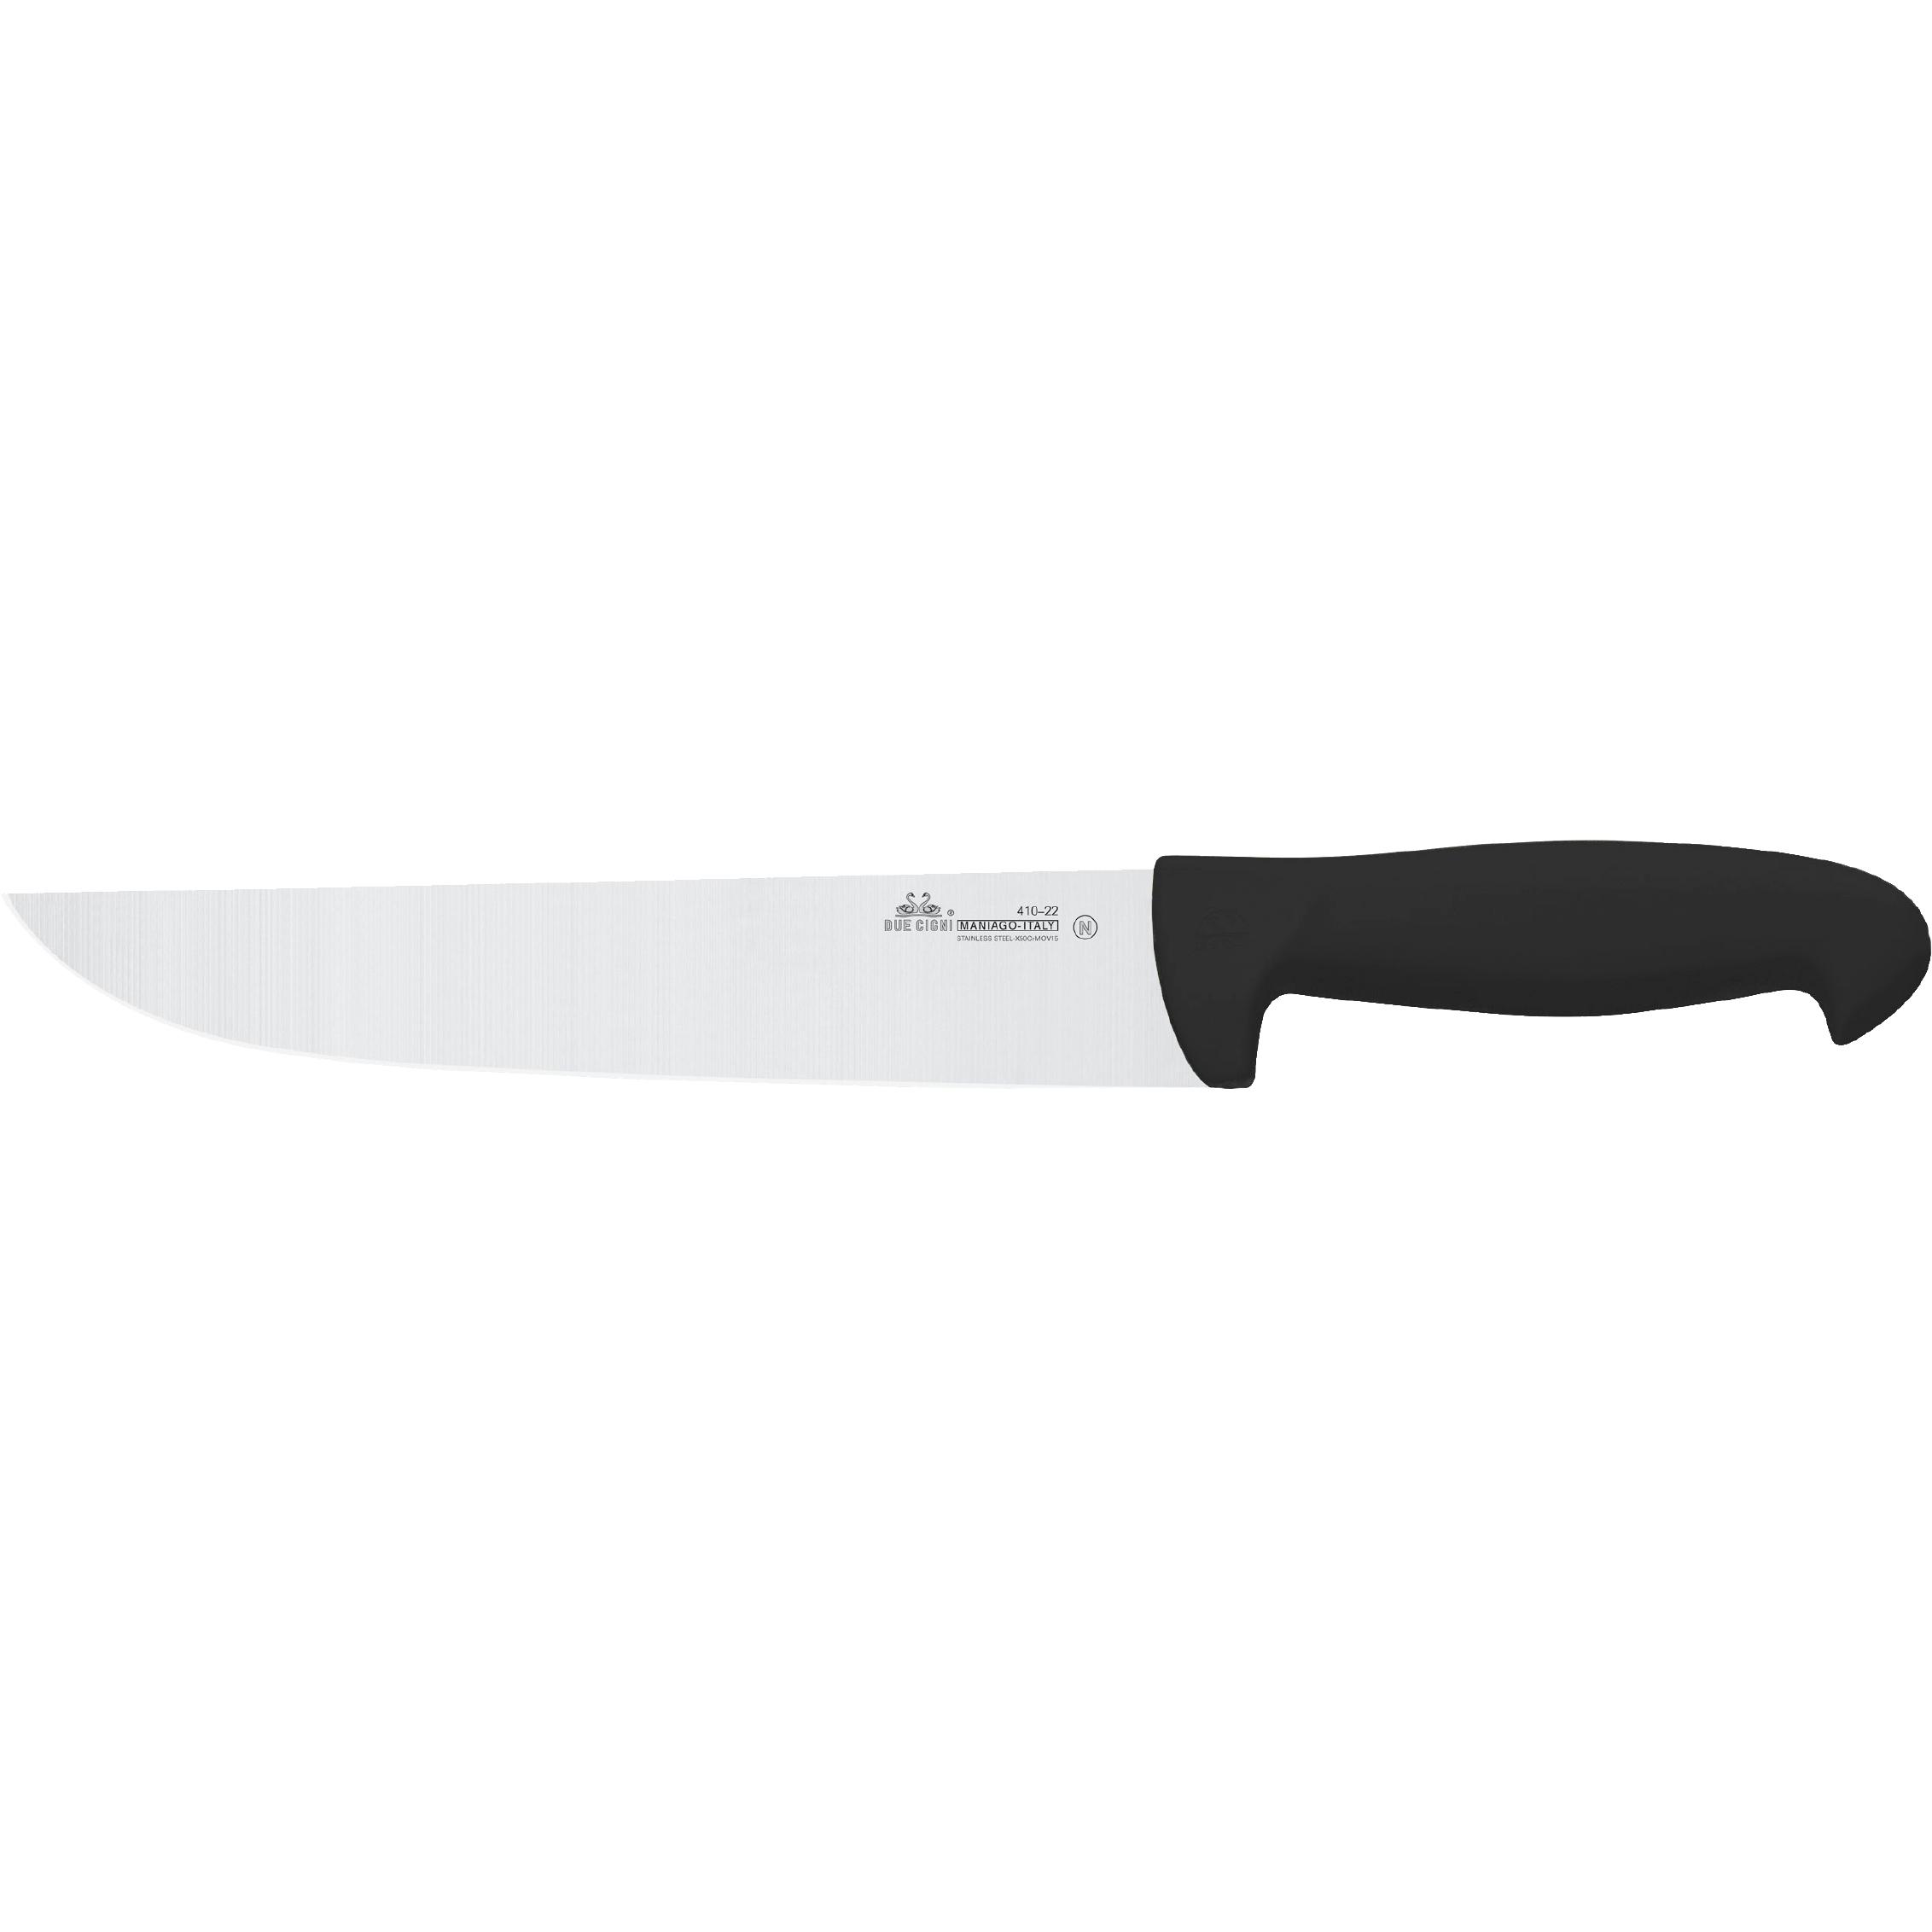 Ніж кухонний Due Cigni Professional Butcher Knife 200 мм. Колір - чорний 2C 410/22 N 1904.01.02